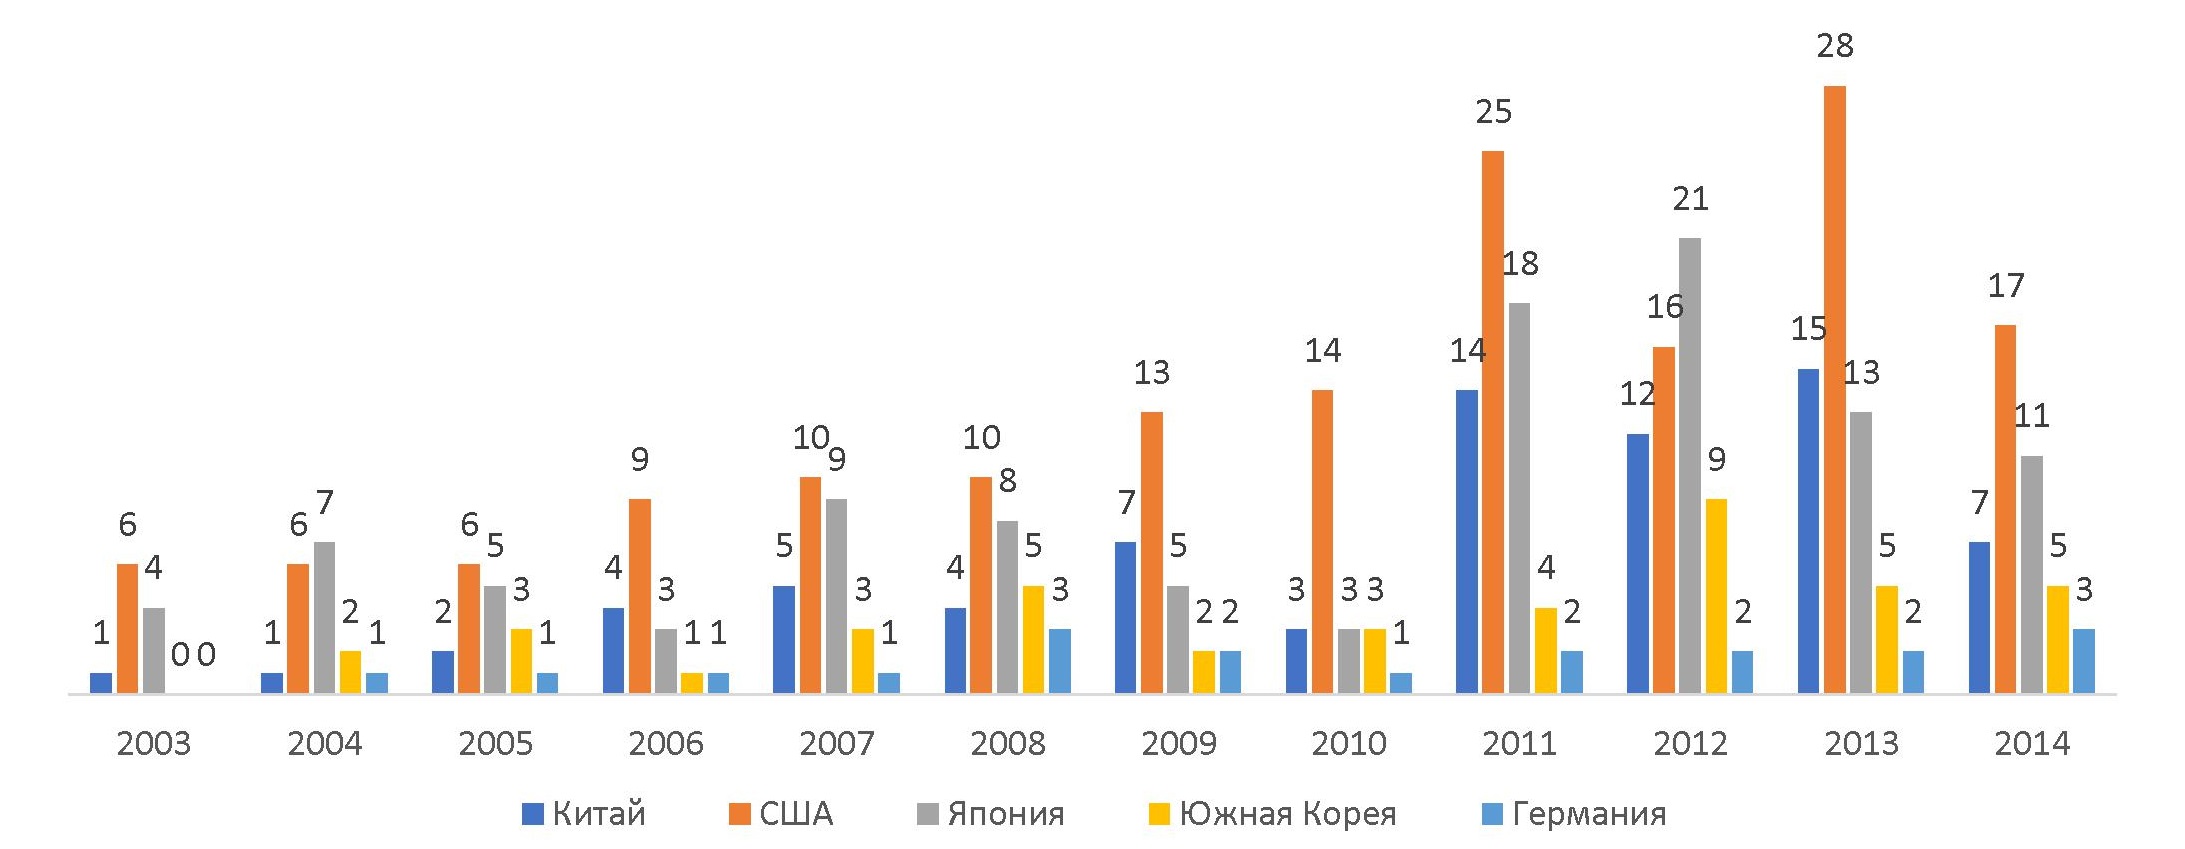 Рисунок 3 – Распределение количества патентных публикаций в мире по странам (топ-5) в период с 2003 г. по 2013 г.